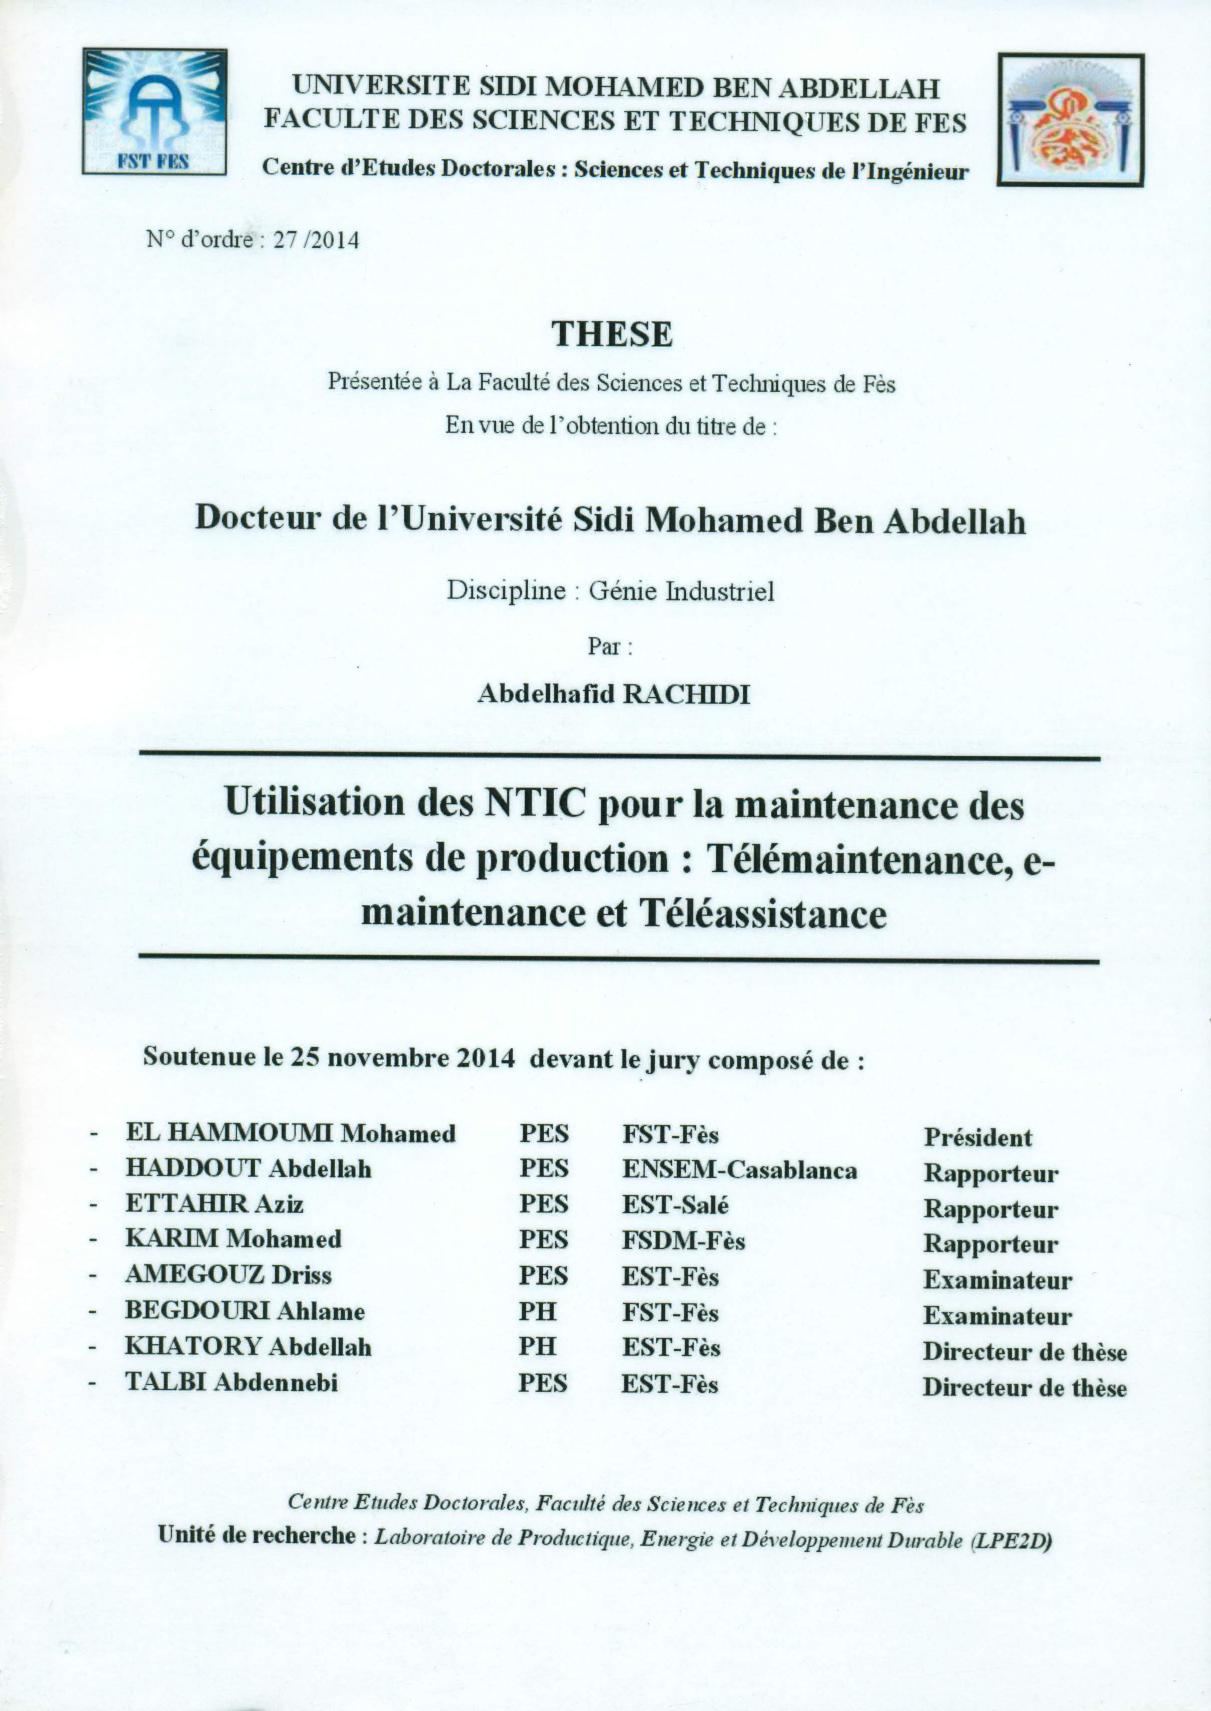 Utilisation des NTIC pour la maintenance des équipements de production : Télémaintenance, e-maintenance et Téléassistance